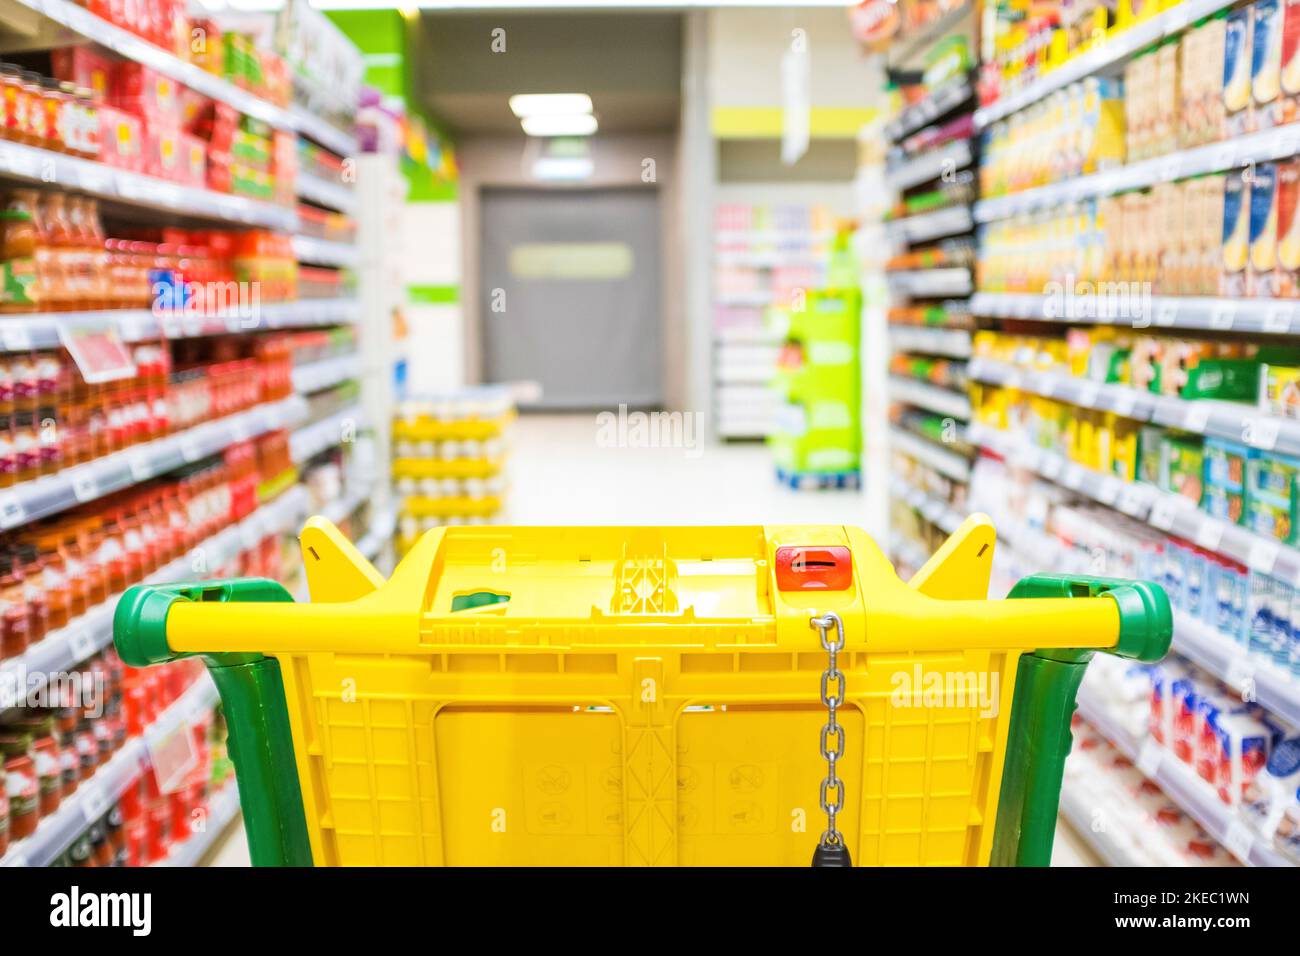 primo piano e vista in prima persona o pov di un carrello che acquista prodotti e cibo in un supermercato vuoto Foto Stock